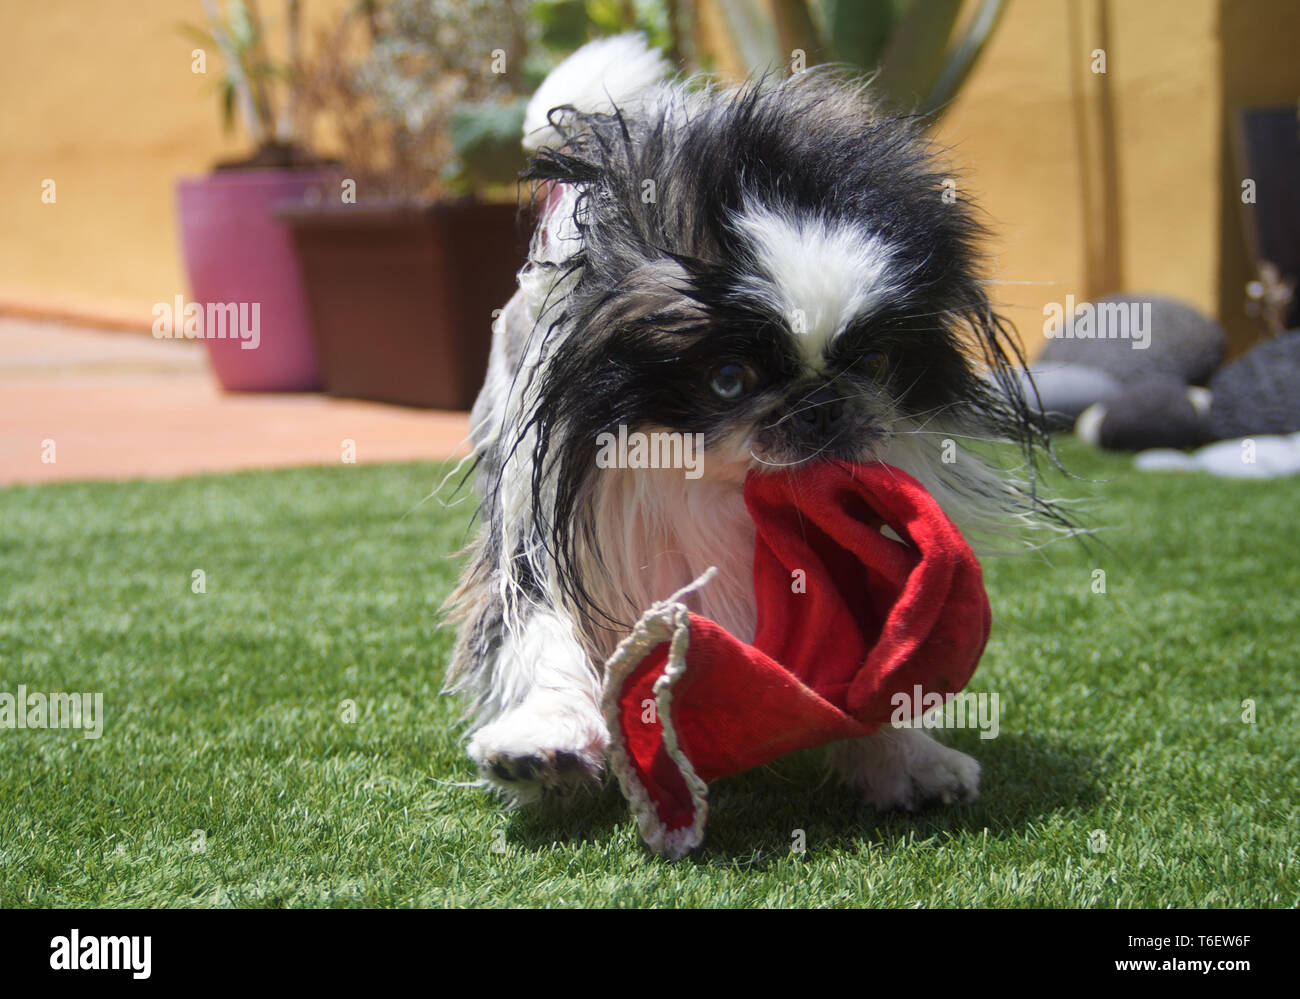 Bellissimo cane pekingese giocando con una calza rossa Foto Stock